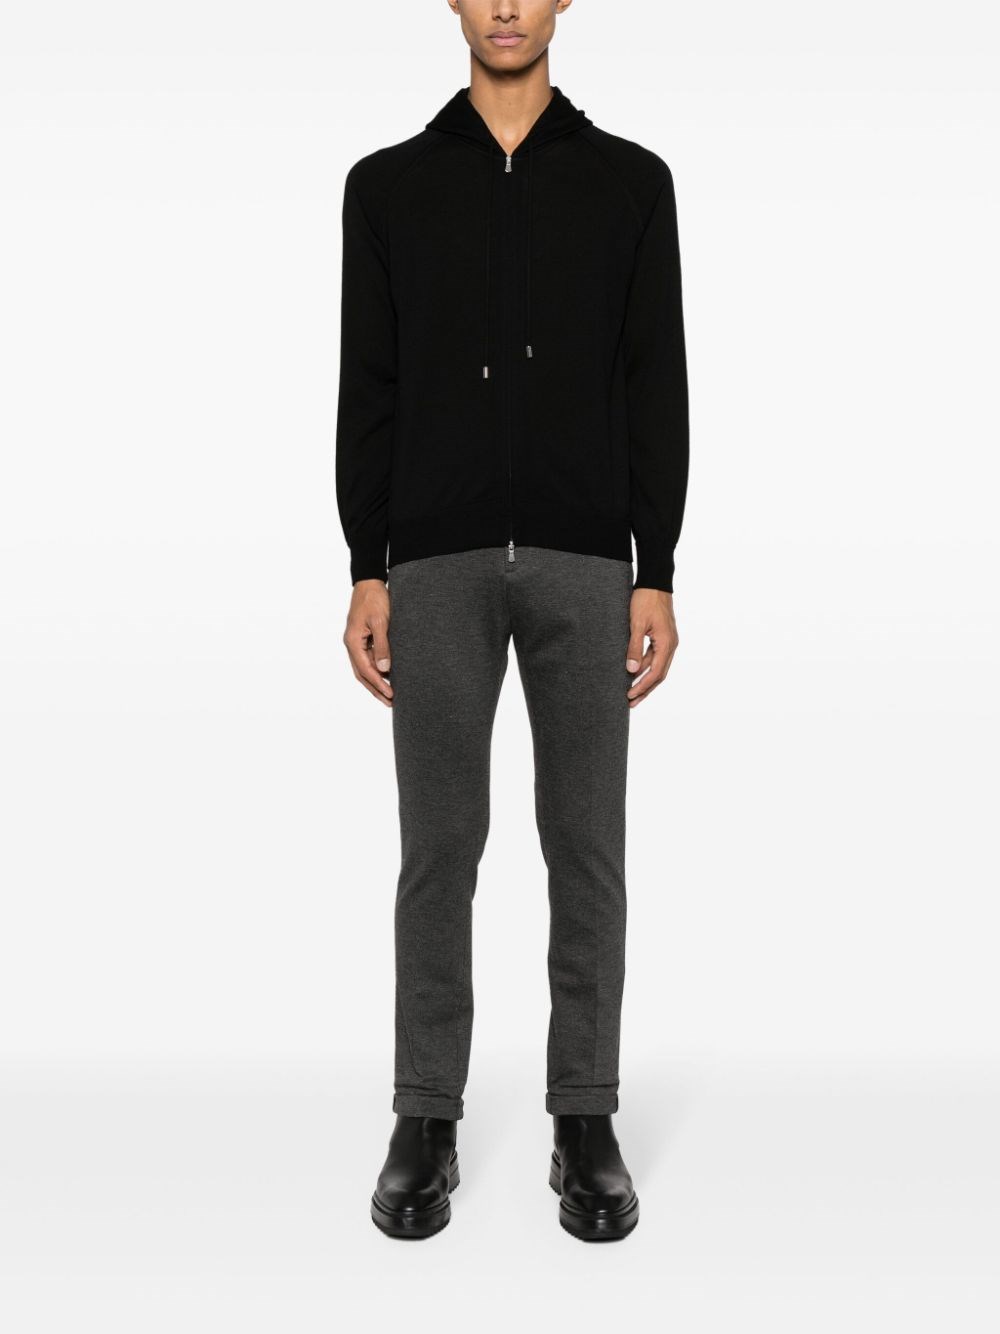 Tagliatore Zip Sweater In Black  